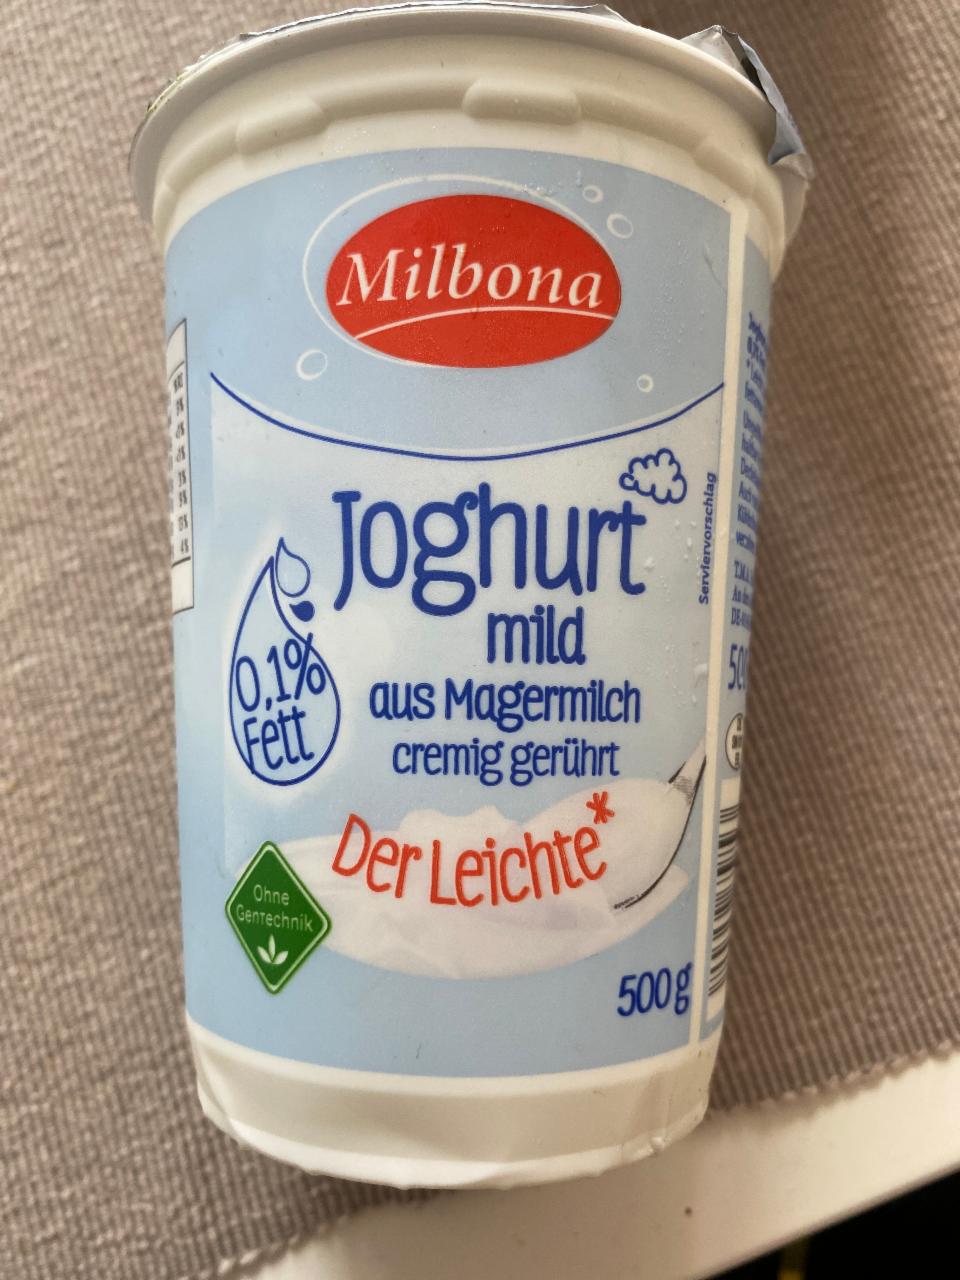 Fotografie - Joghurt Mild 0,1 % Fett Ja!